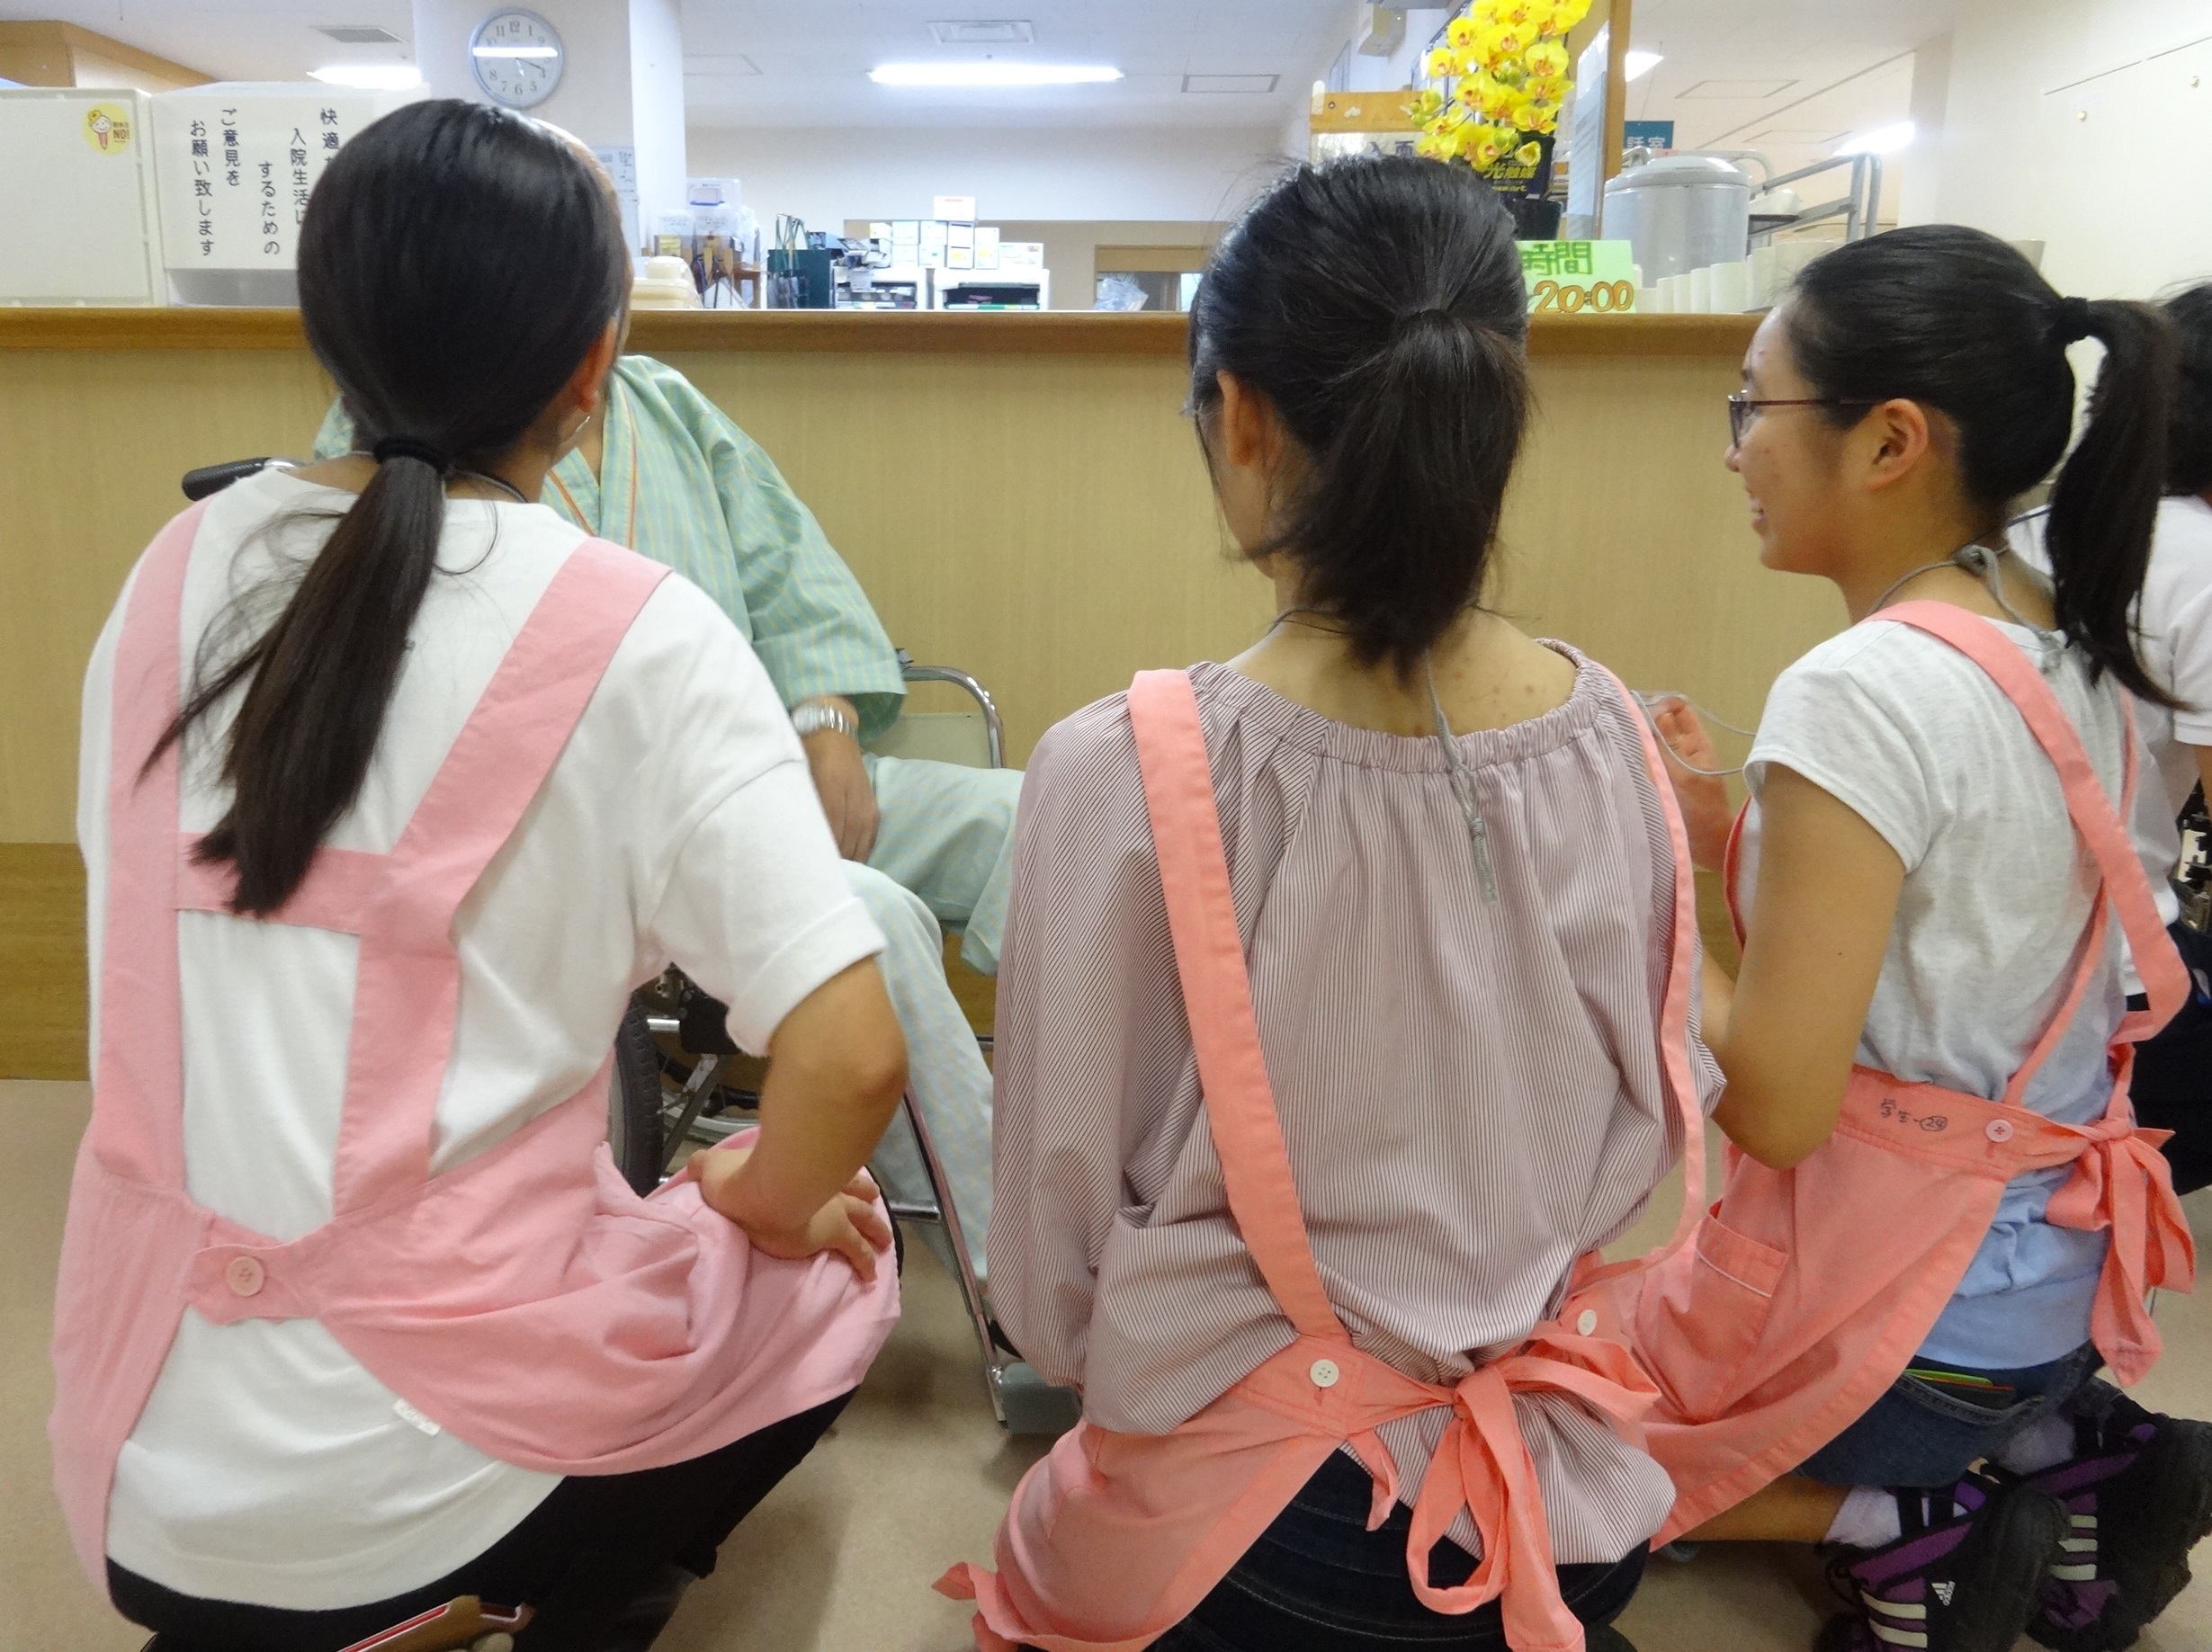 二和盆踊り大会。医師を目指す高校生がボランティアで参加！